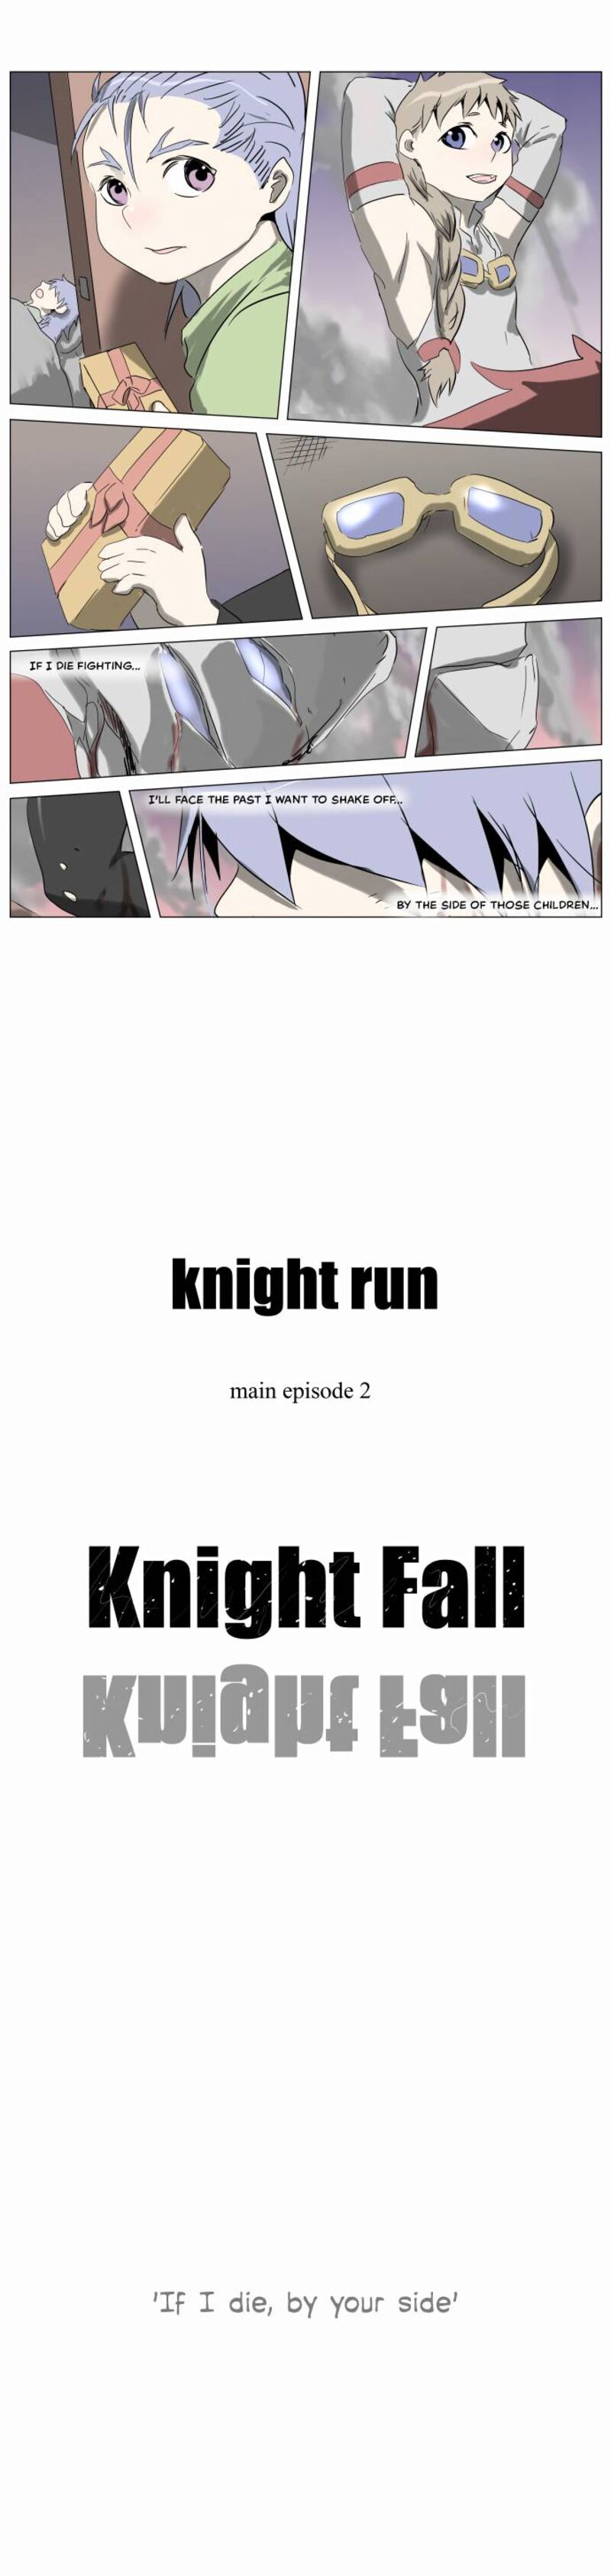 Knight Run 236 25